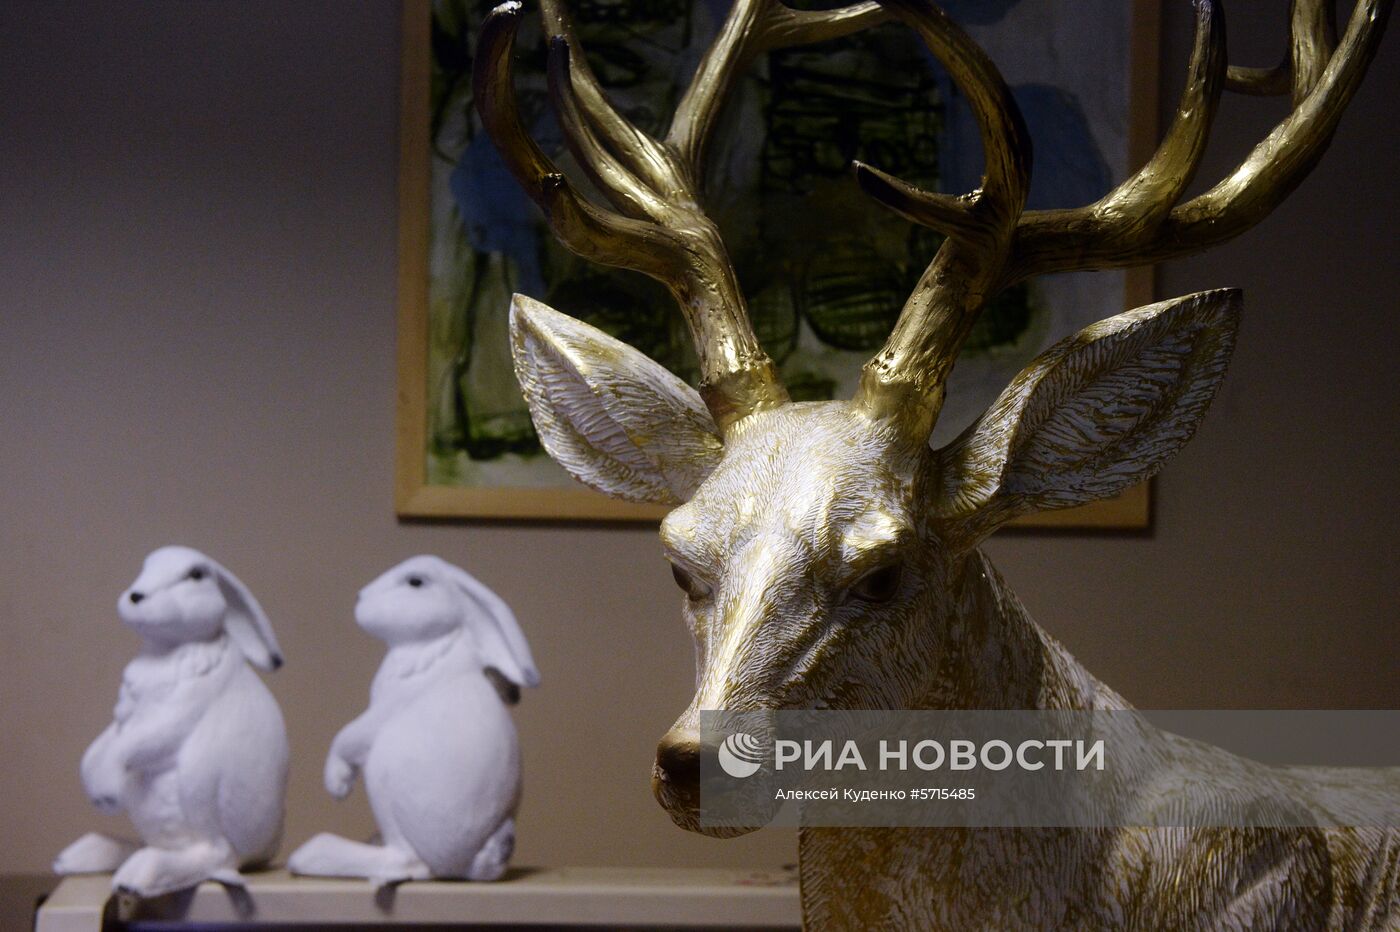 Производство украшений для новогоднего оформления Москвы